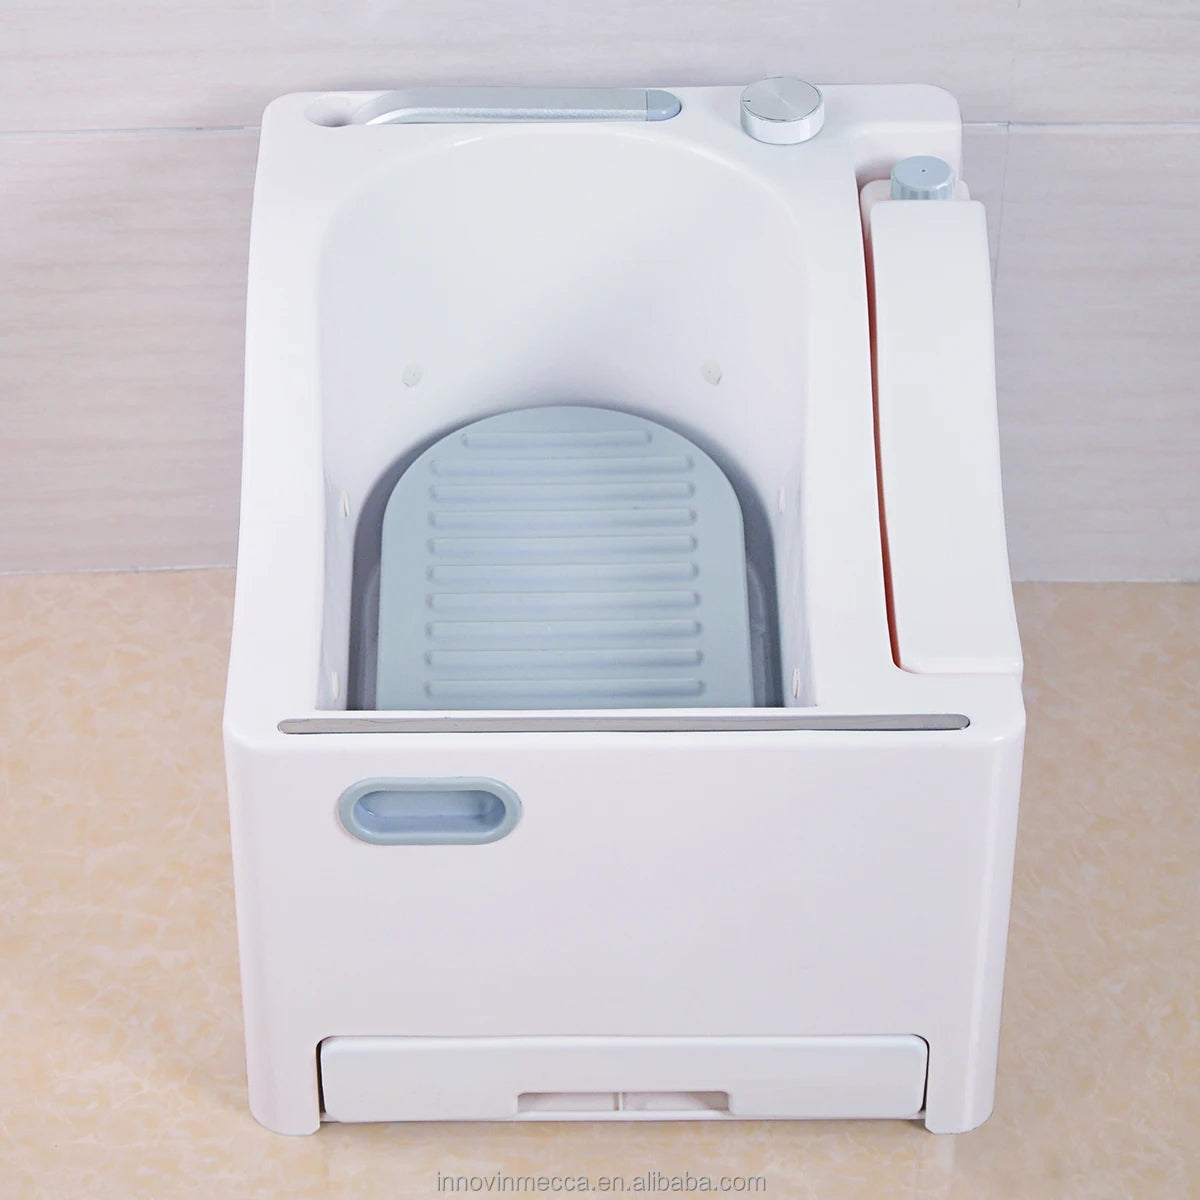 آلة الوضوء المحمولة لغسل اليدين والقدمين والوجه